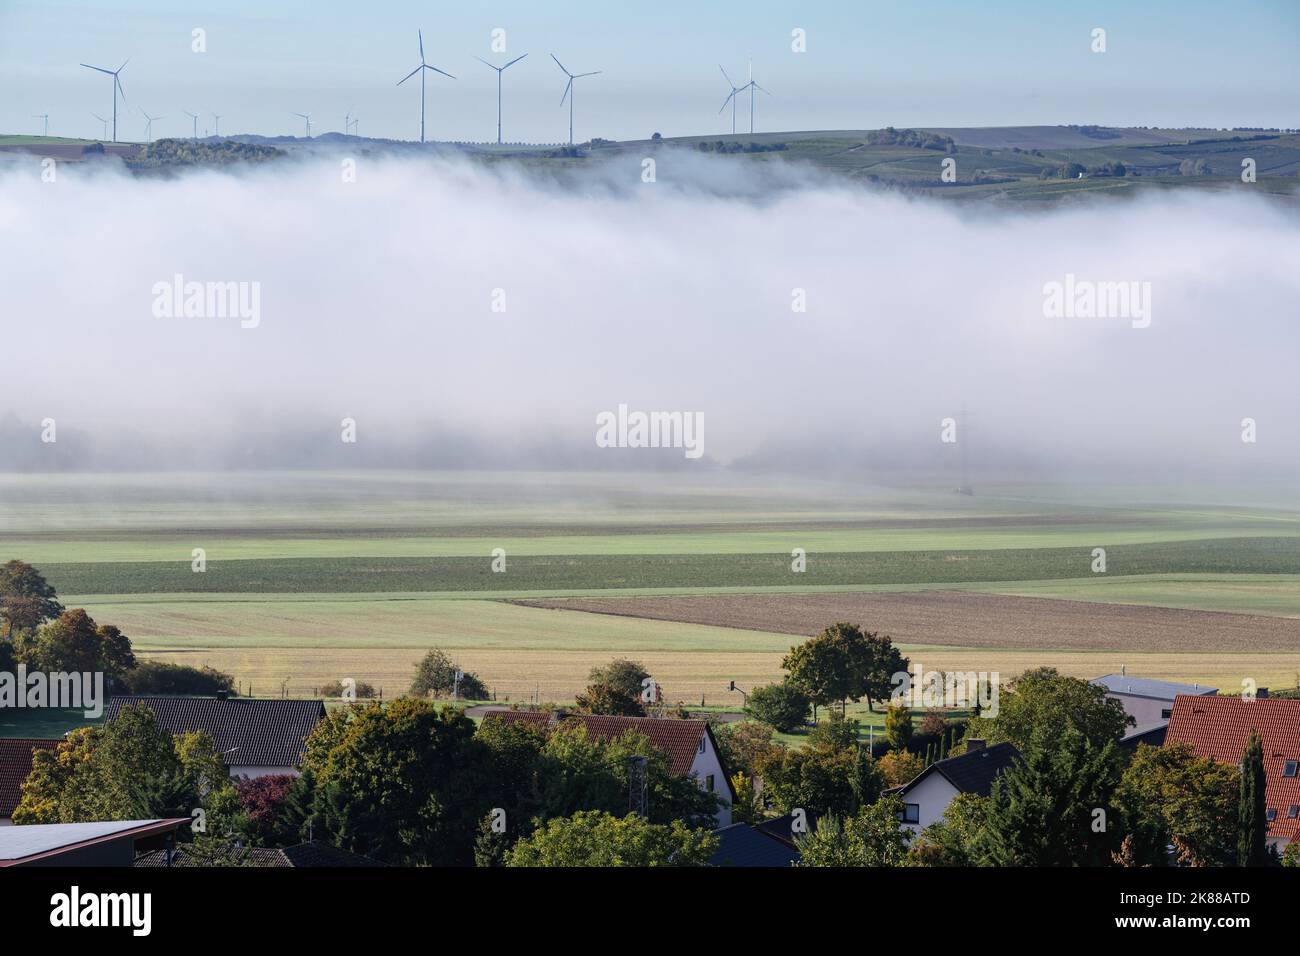 Un groupe de moulins à vent se dresse sur une colline contre un ciel clair et il y a du brouillard dans la vallée en face de lui. Banque D'Images